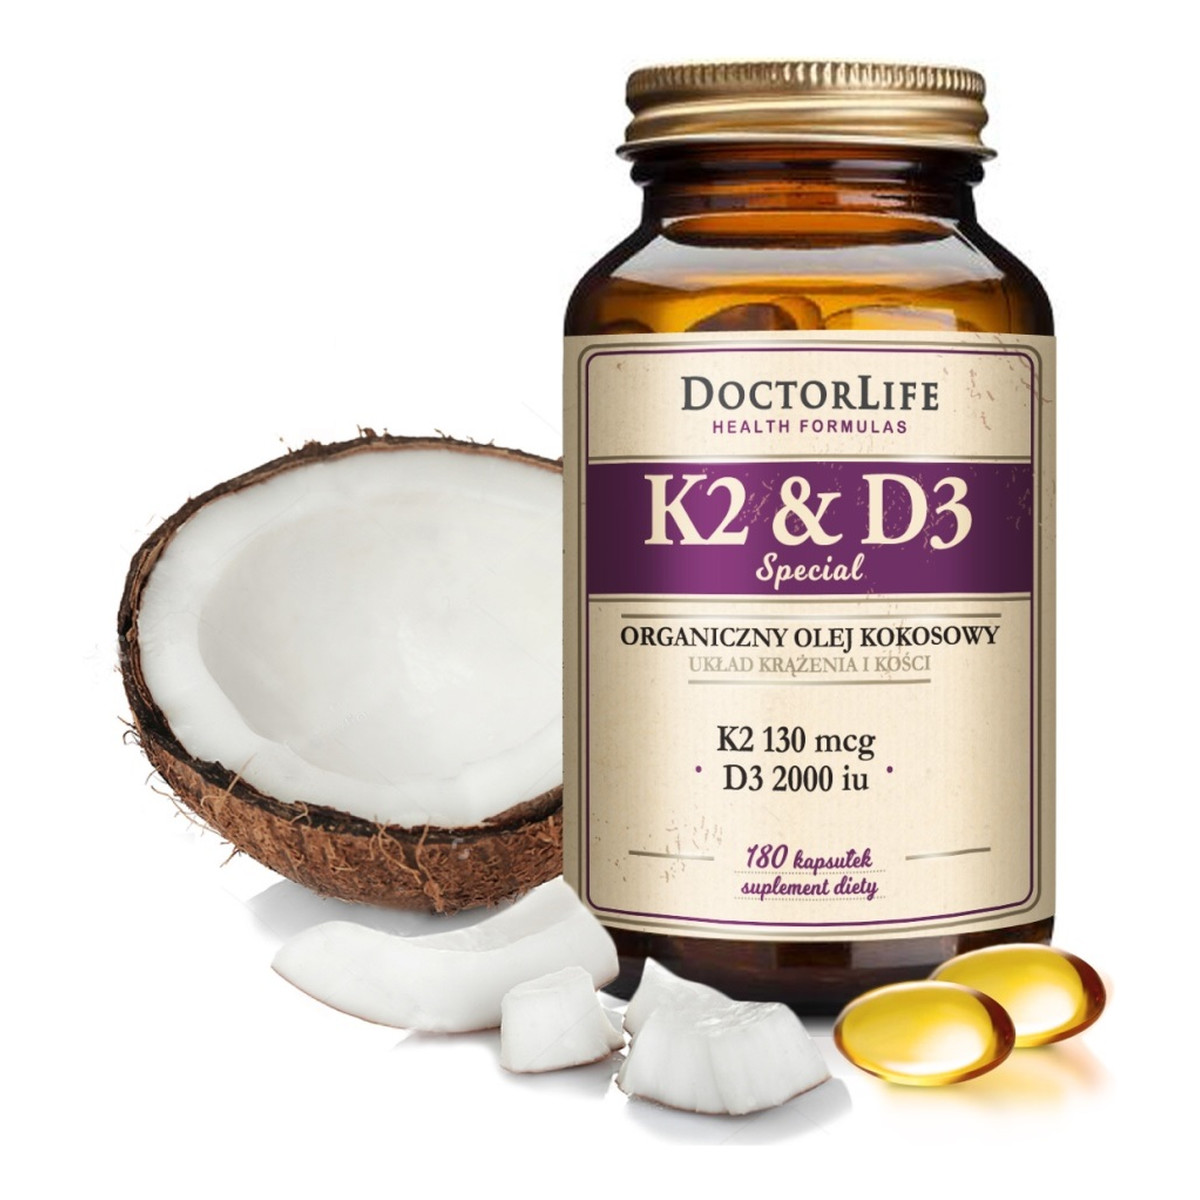 Doctor Life K2 & D3 organiczny olej kokosowy 130ug K2 mk-7 & 2000iu D3 suplement diety 180 kapsułek